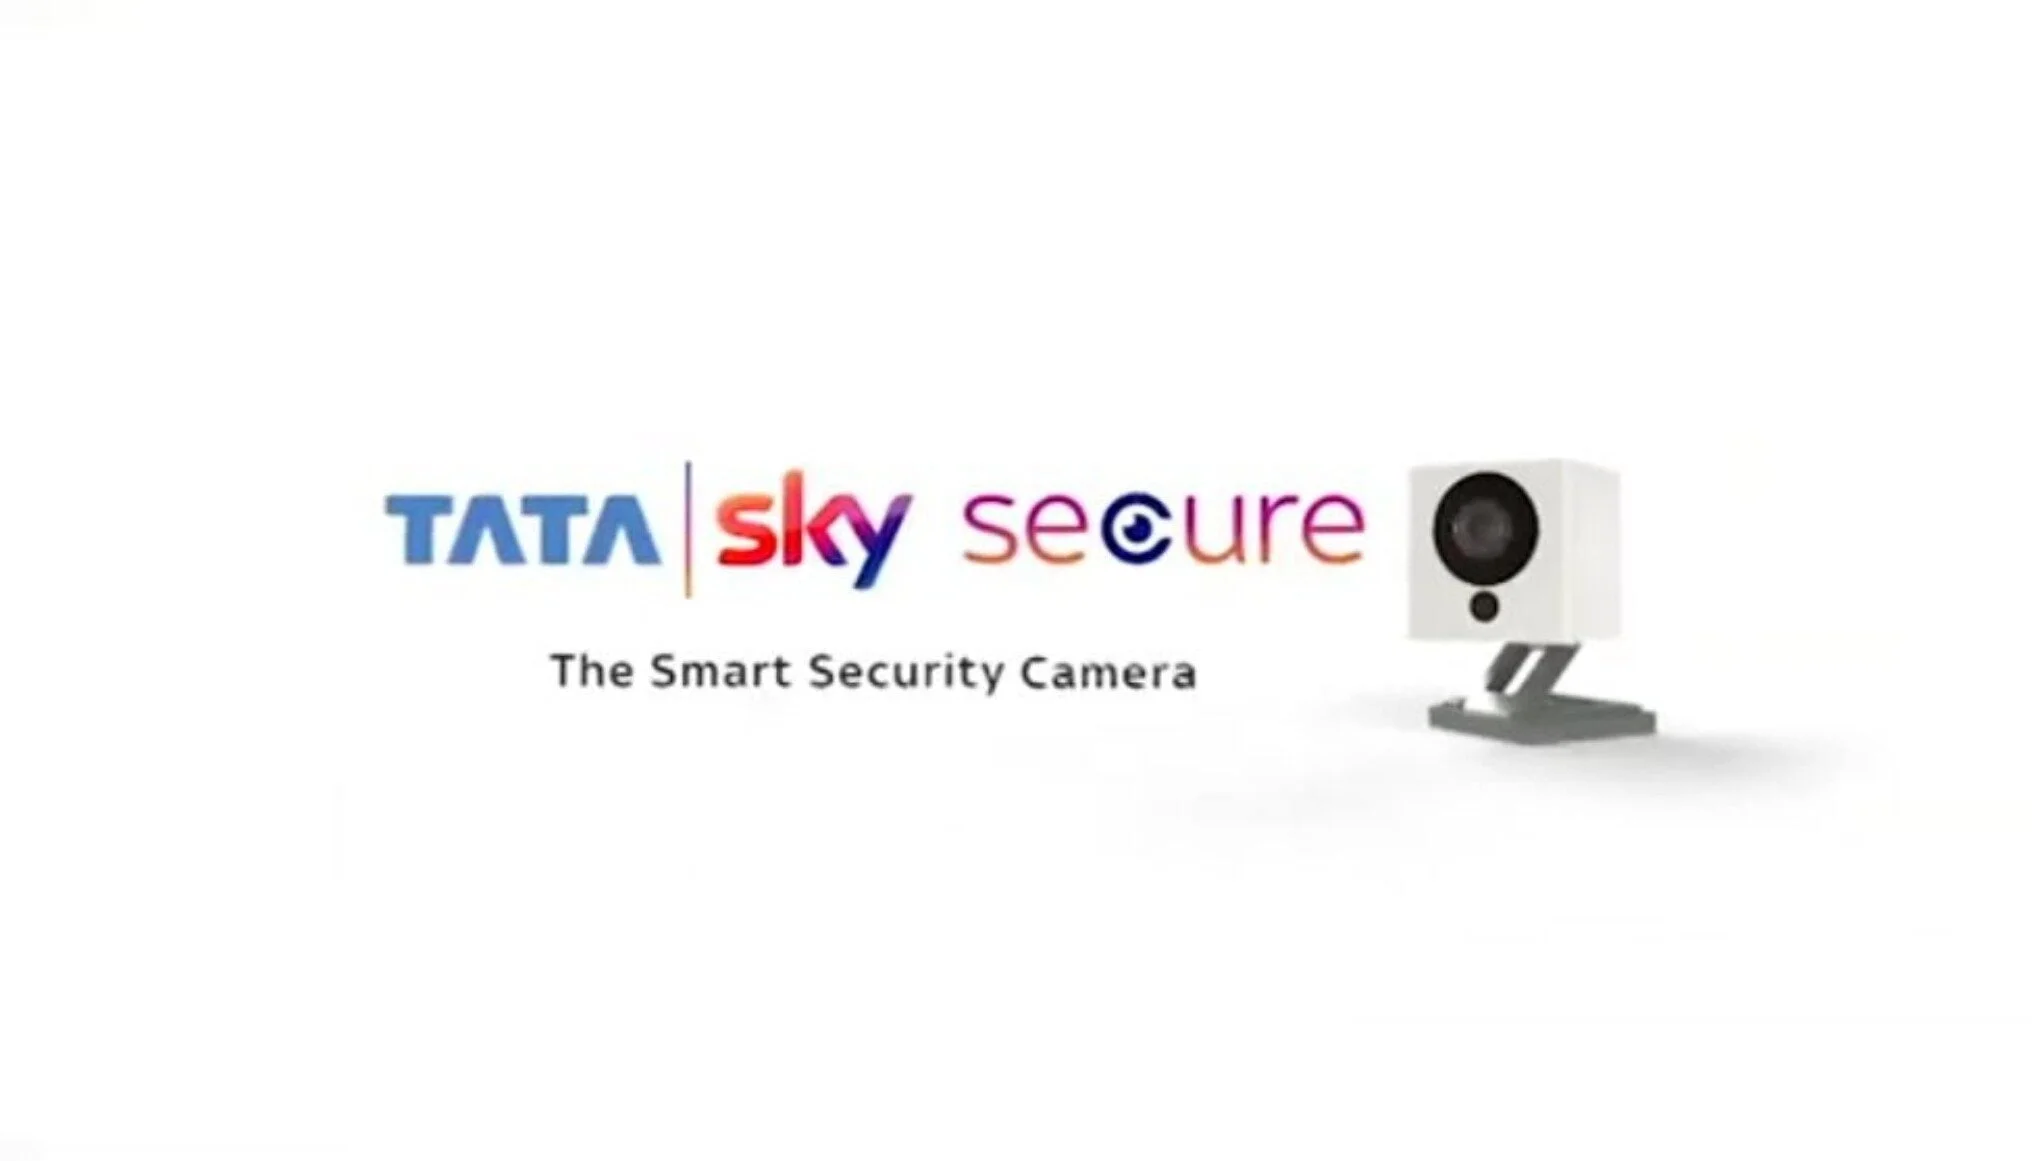 Tata Sky Secure e1623115371844